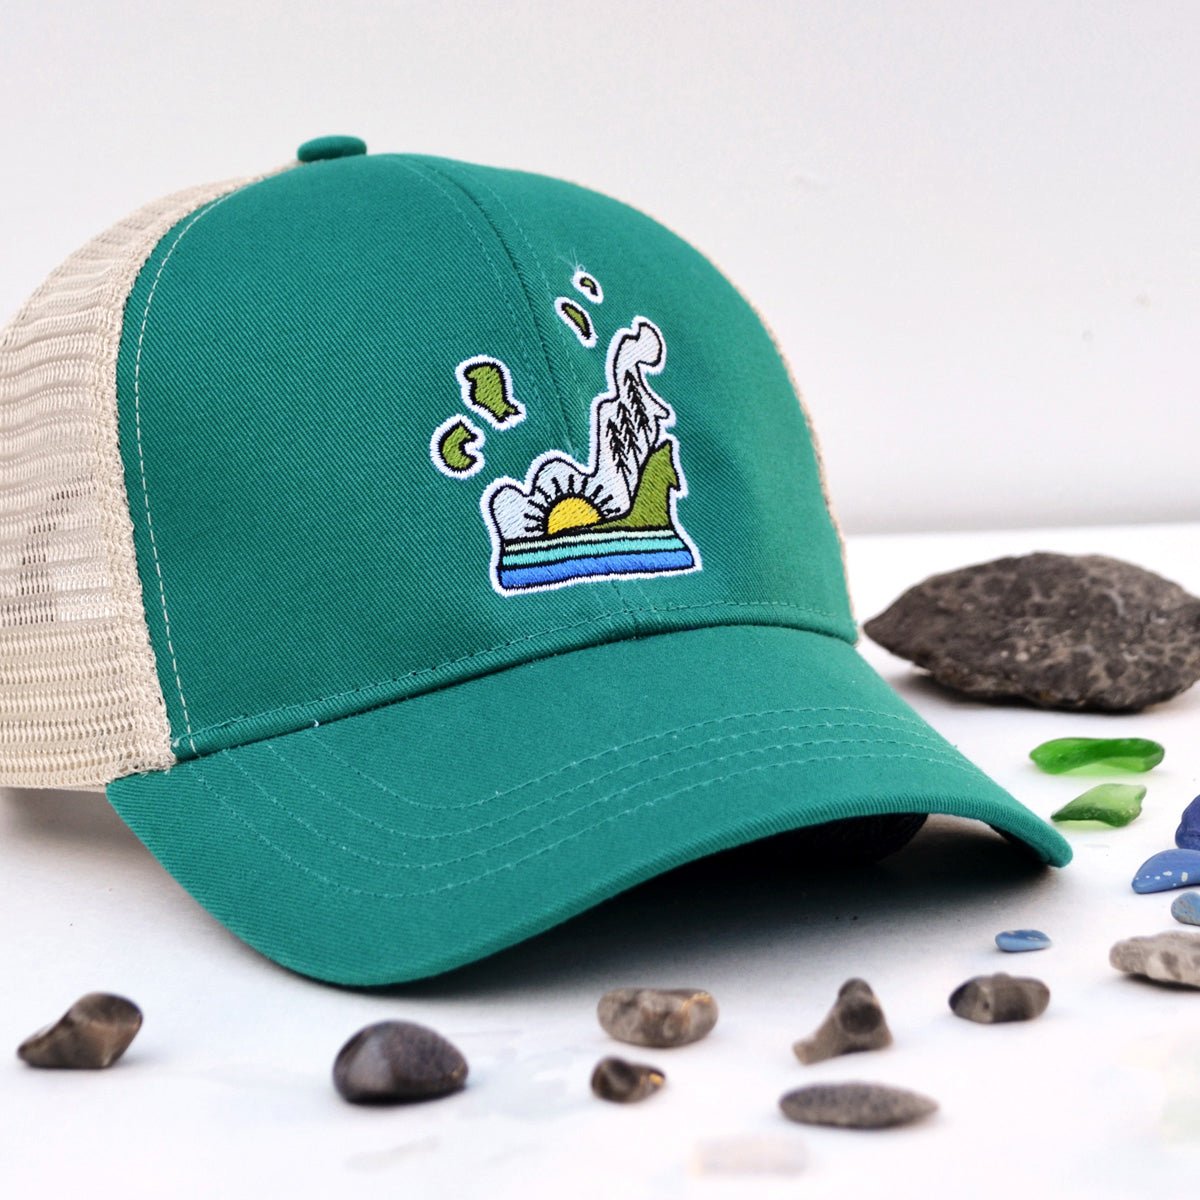 Sustainable Leelanau Low-profile Trucker Hat in Teal - jacobandlouise.com